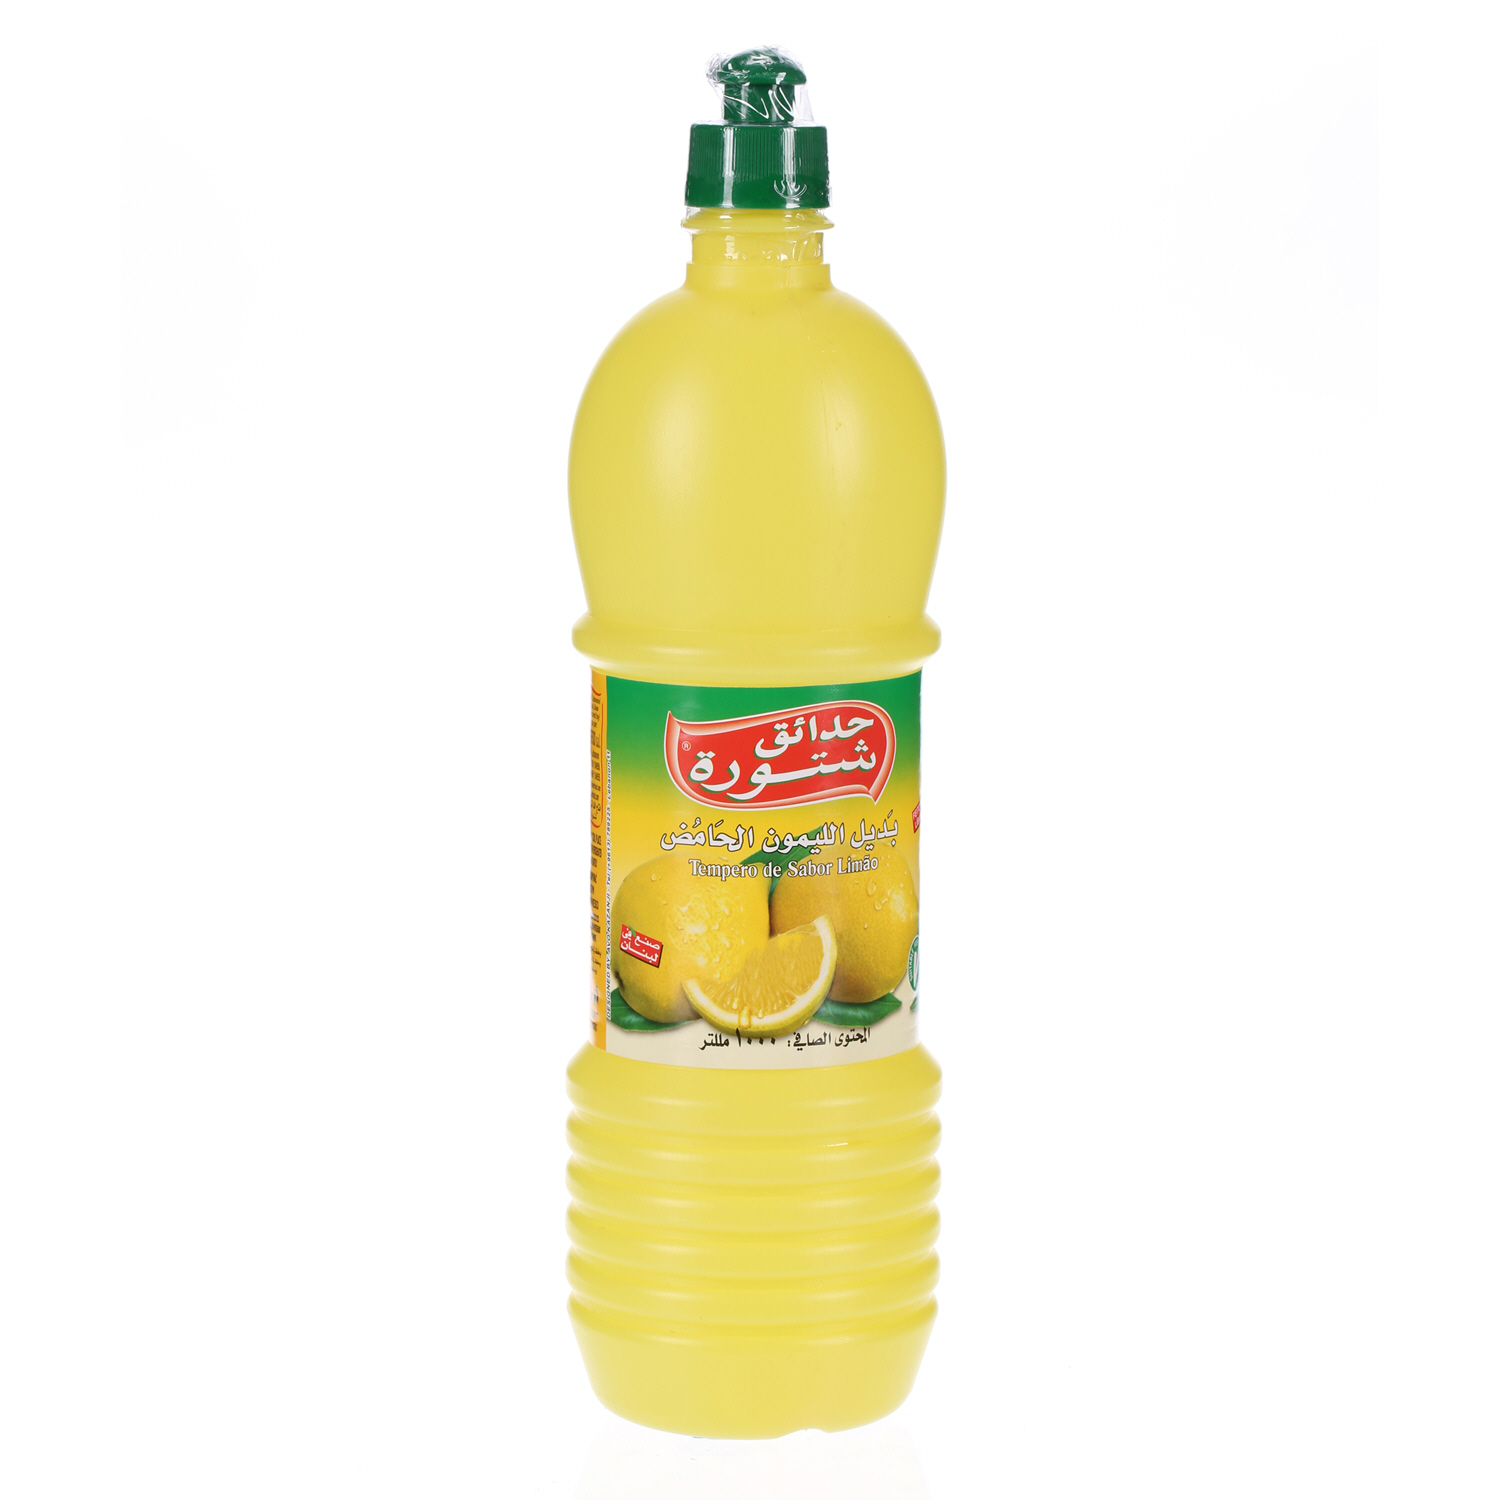 Chtoura Garden Lemon Flovour Seasoning 1 L